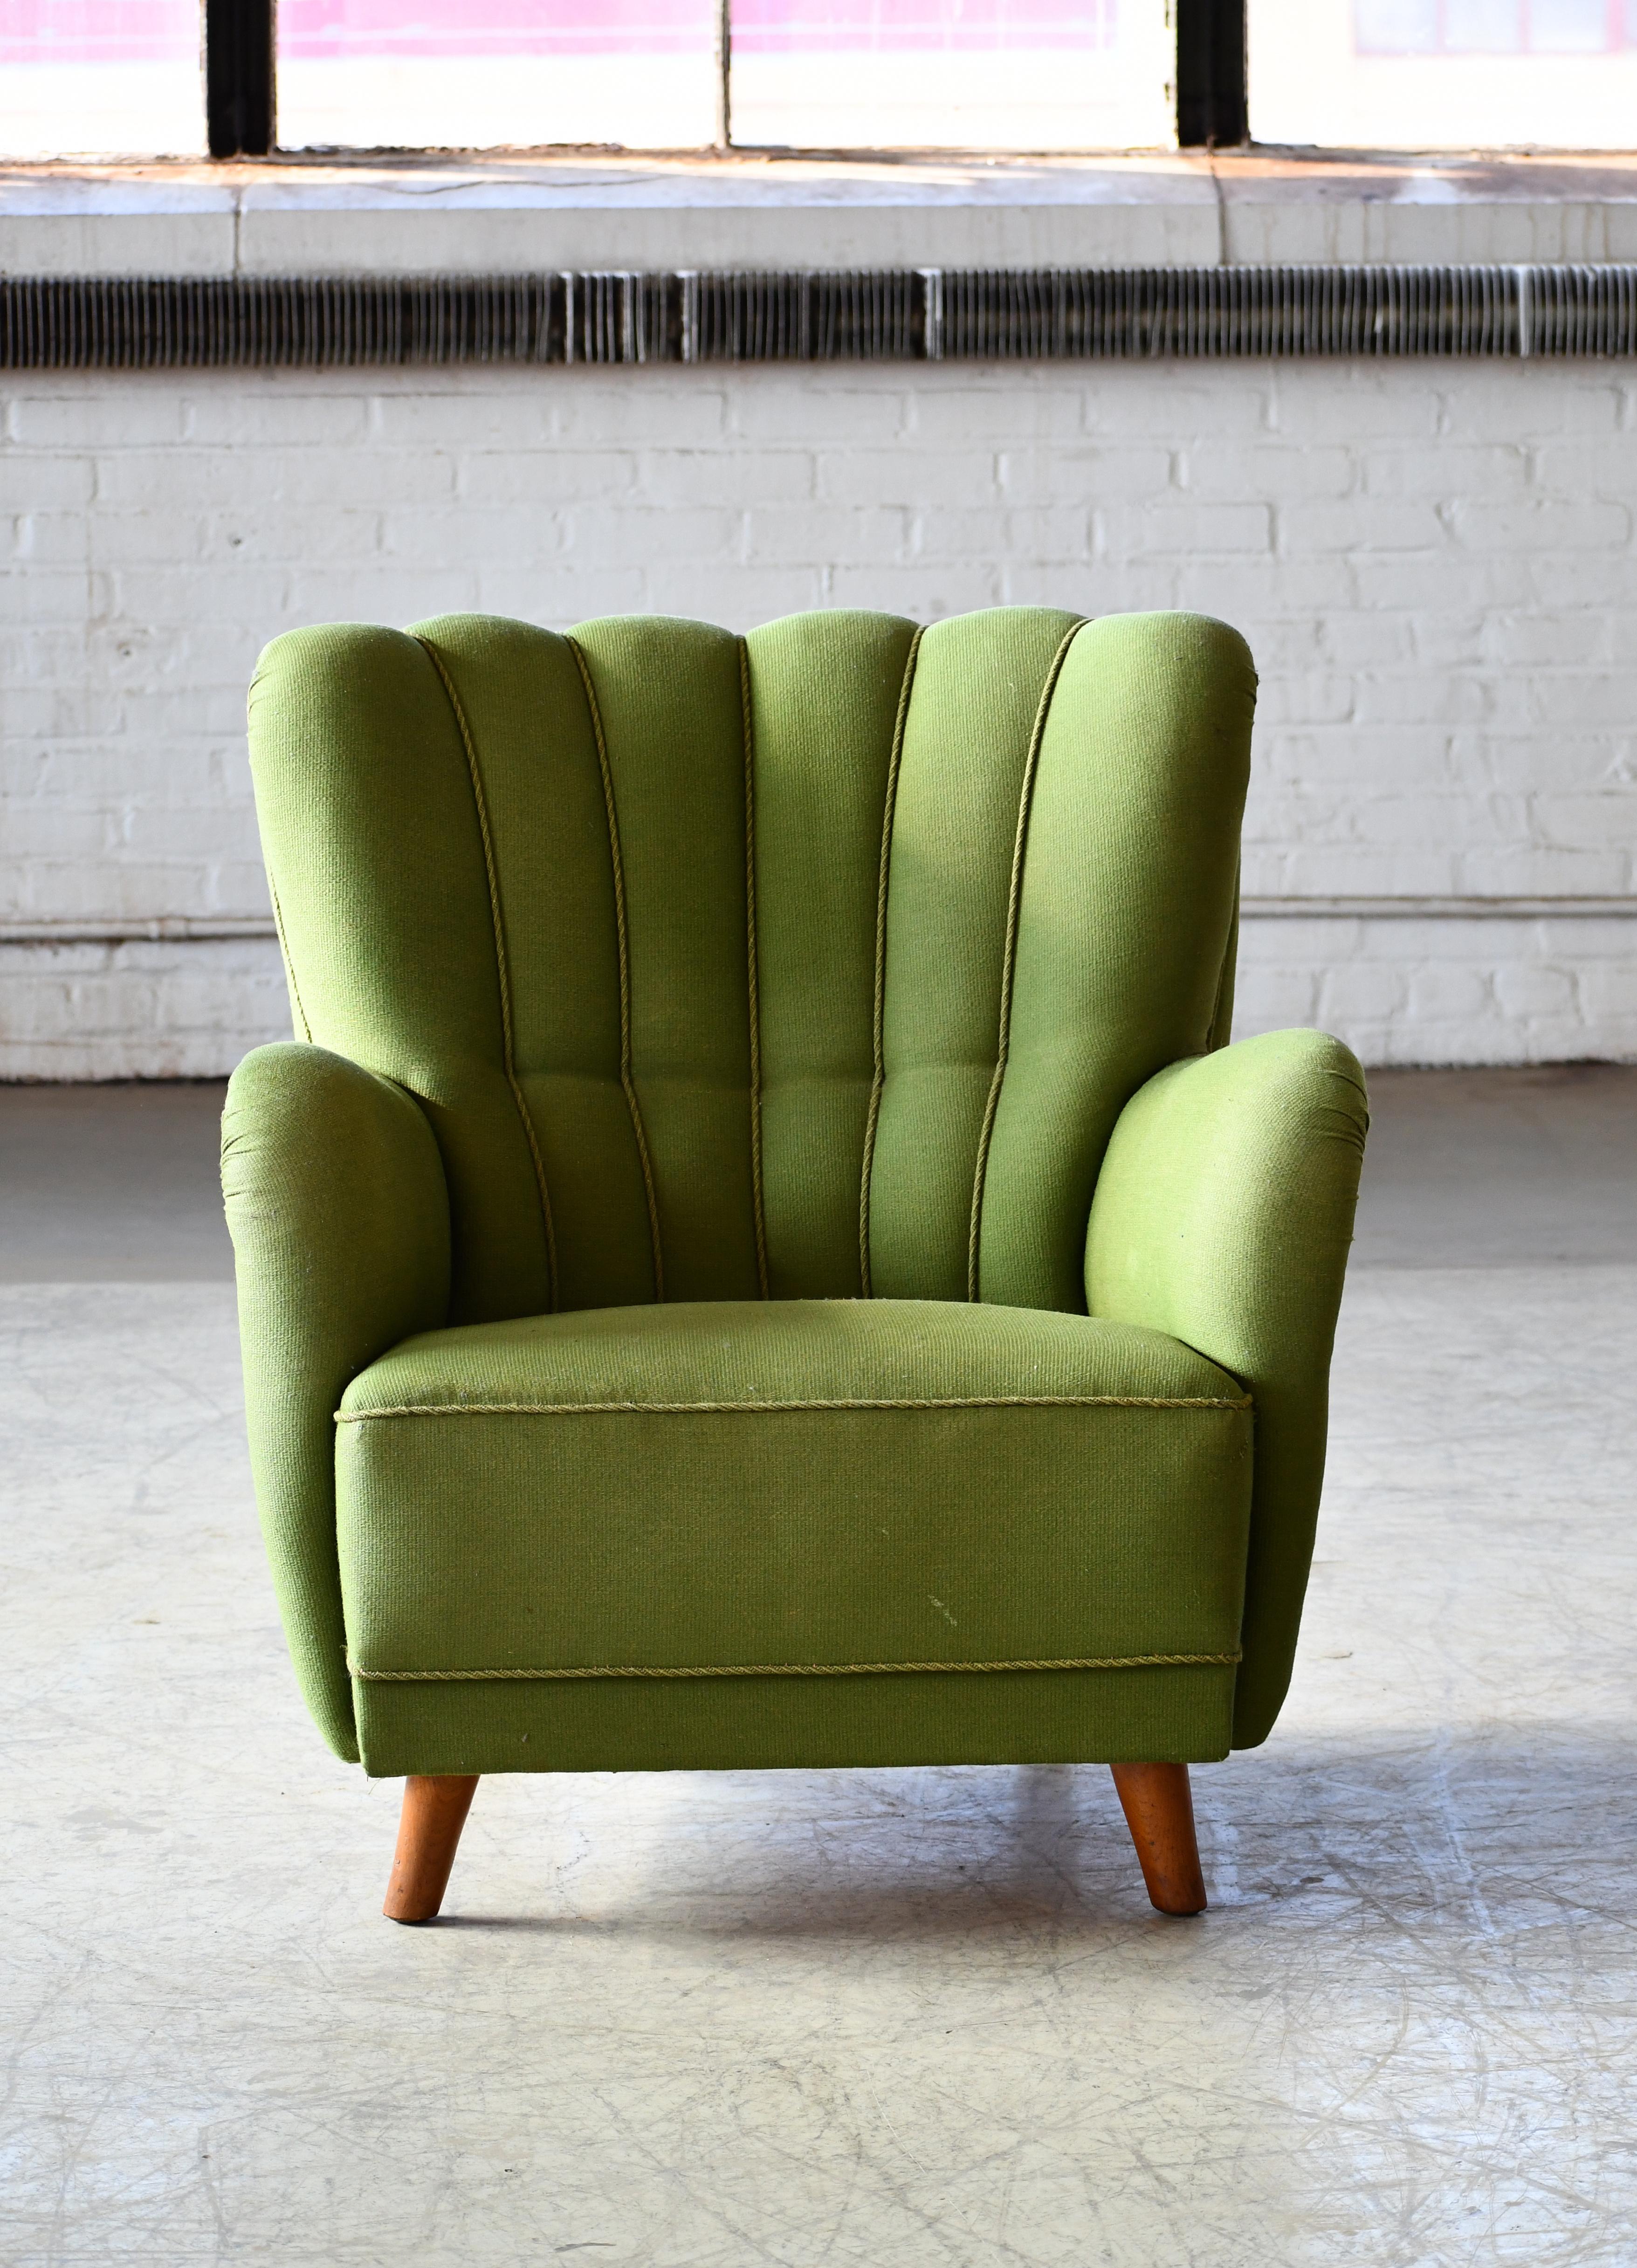 Super charmante chaise longue des années 1940 dans le style de Mogens Lassen avec une forme organique très sculpturale et des proportions harmonieuses. Polyvalent, il convient parfaitement aux espaces plus restreints qui ont besoin d'un message plus